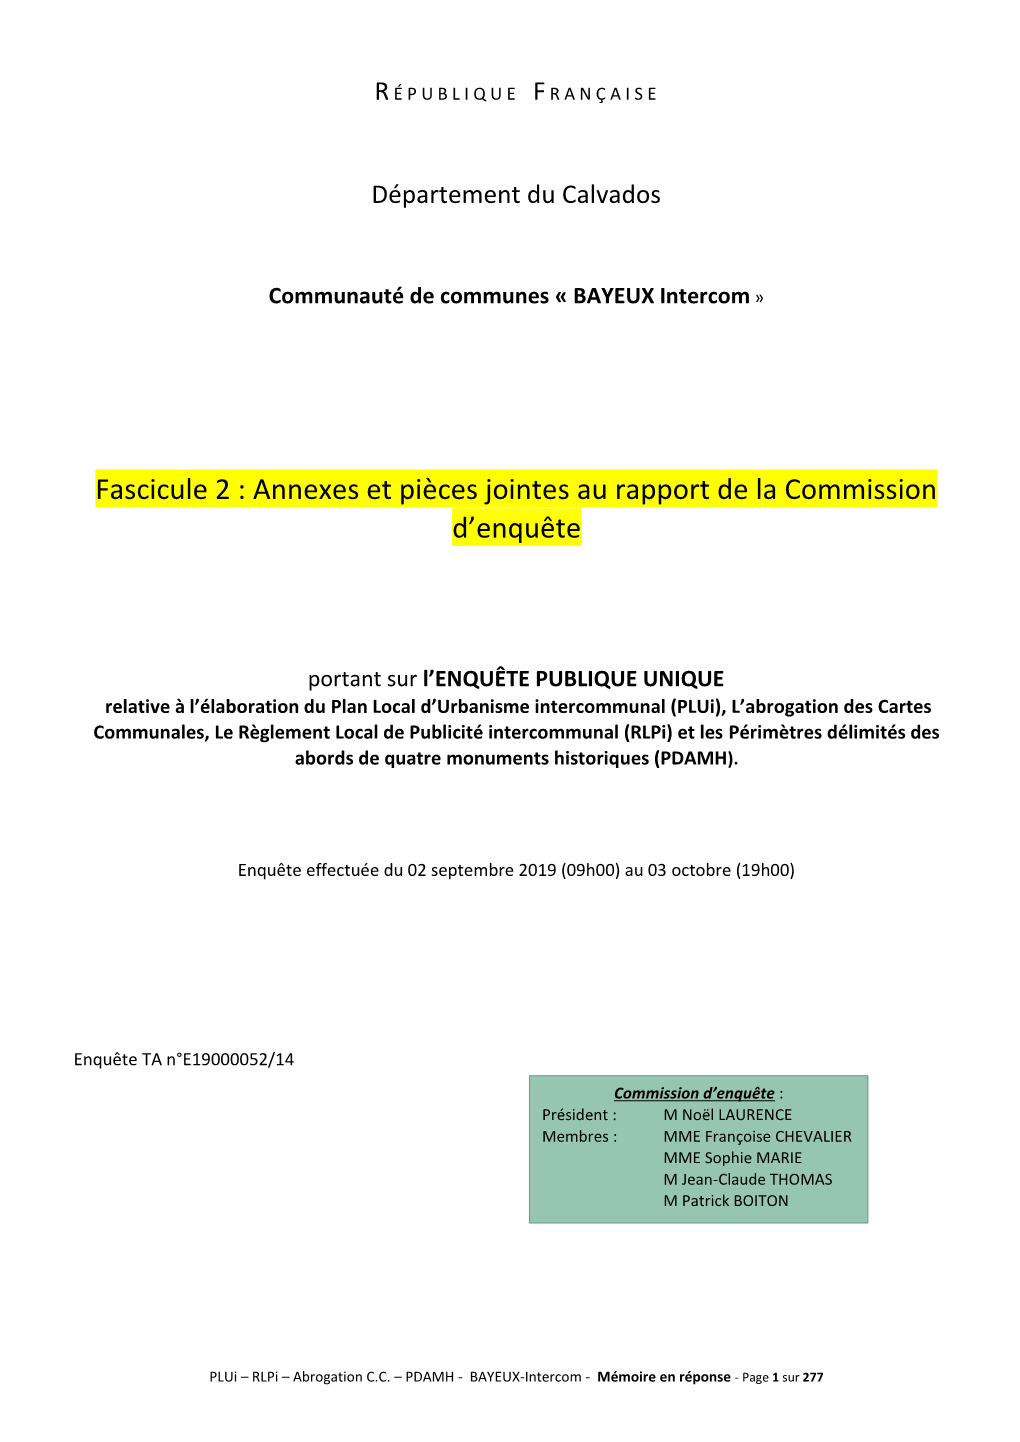 Fascicule 2 : Annexes Et Pièces Jointes Au Rapport De La Commission D’Enquête